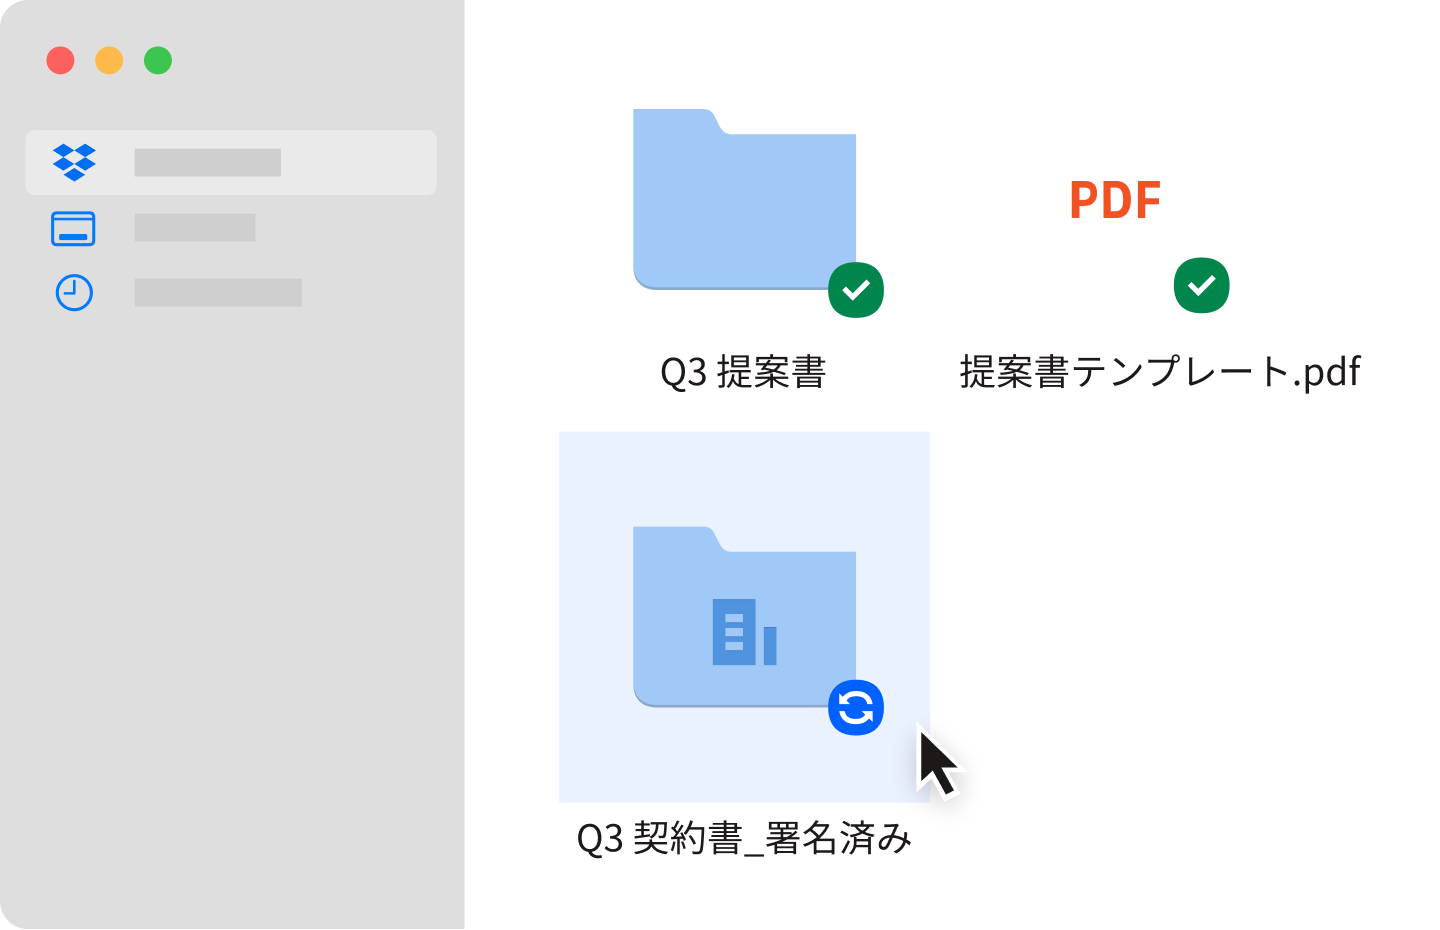 Dropbox アカウントで同期された 2 つの青いファイル フォルダと 1 つの PDF ファイル